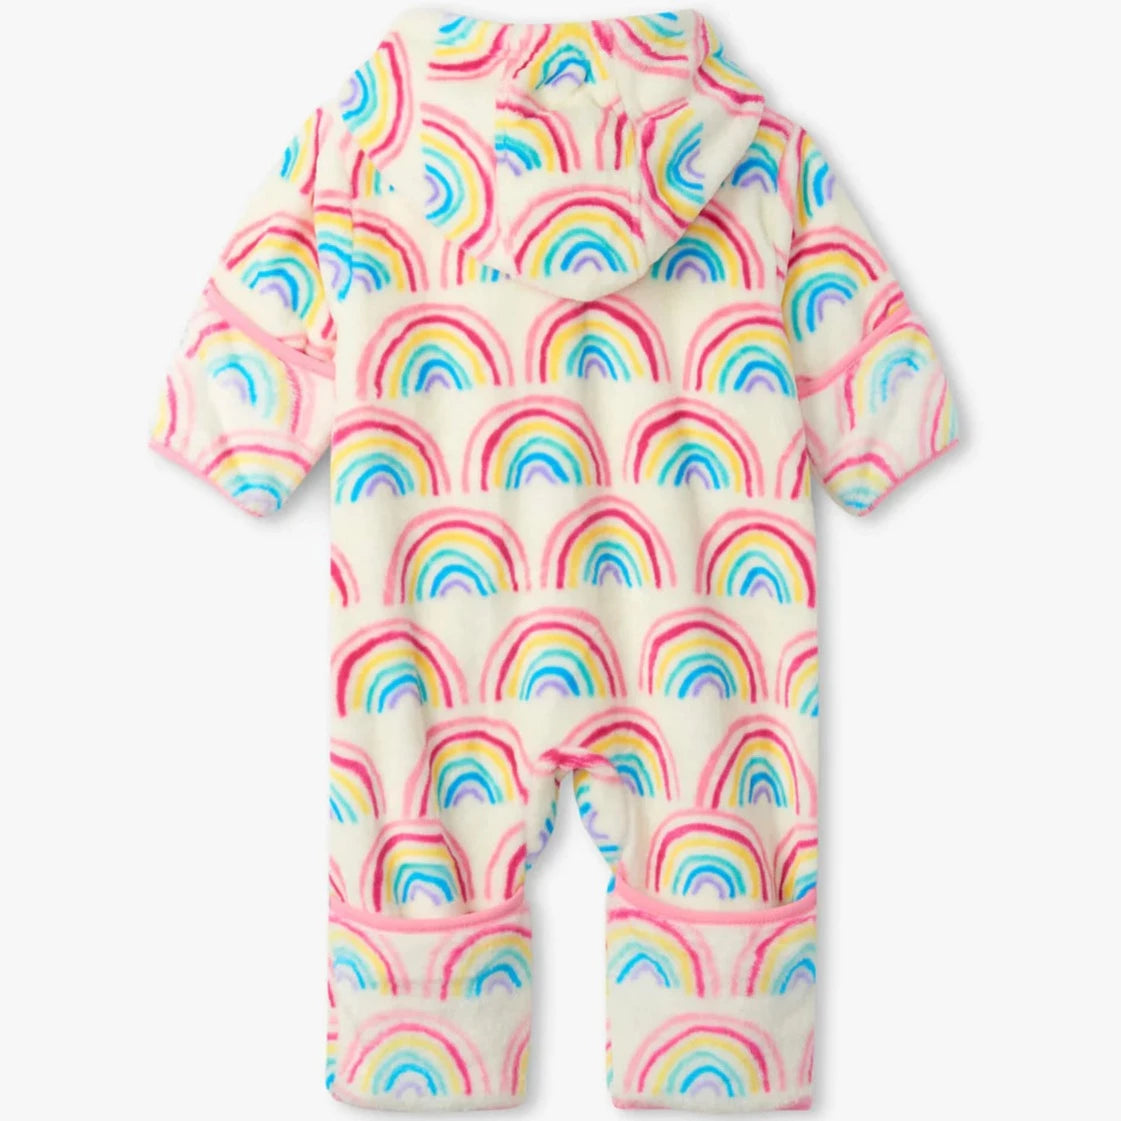 Fuzzy Fleece Baby Bundler - Pretty Rainbows